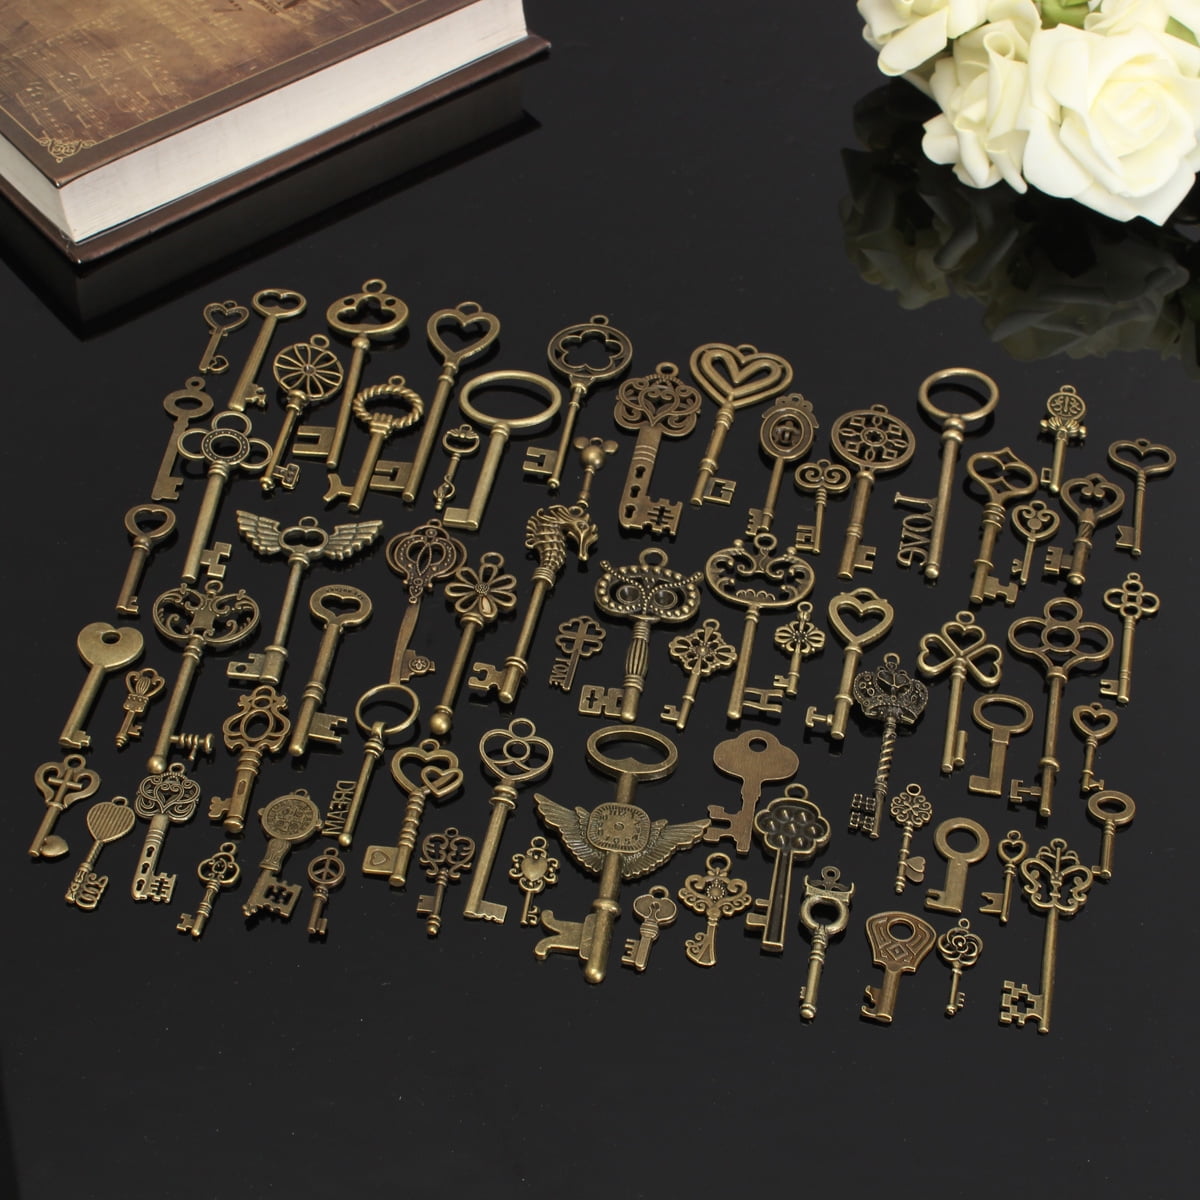 69 pcs/set Copper yellow Retro Key Antique Vintage Style Keys Pendant for Decor 